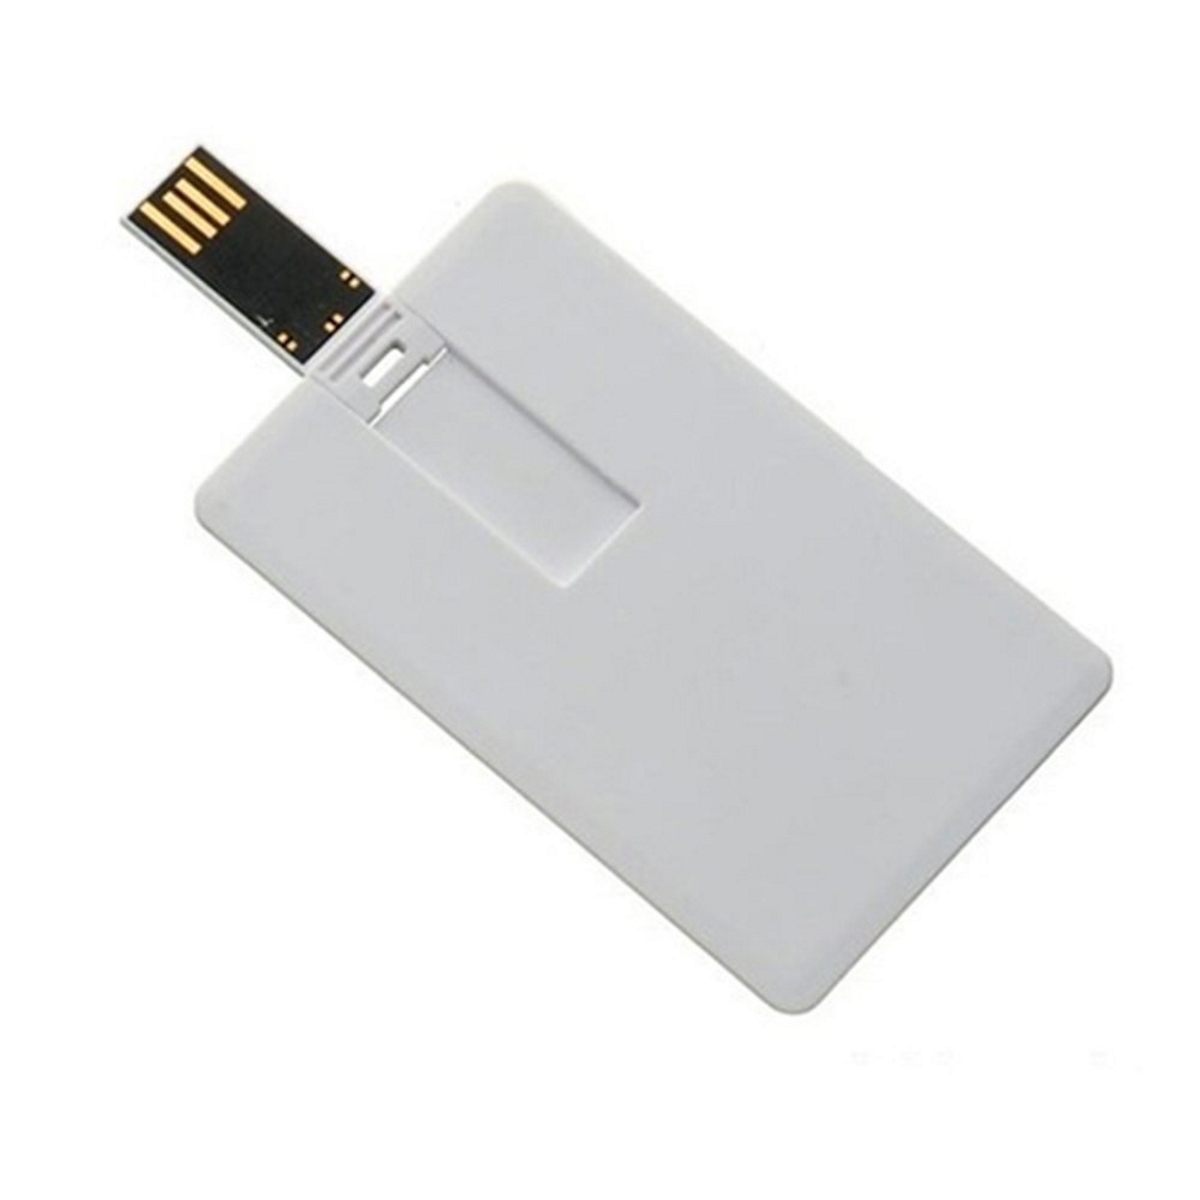 ® USB USB-Stick Kreditkarte GB) 8 (Weiss, GERMANY